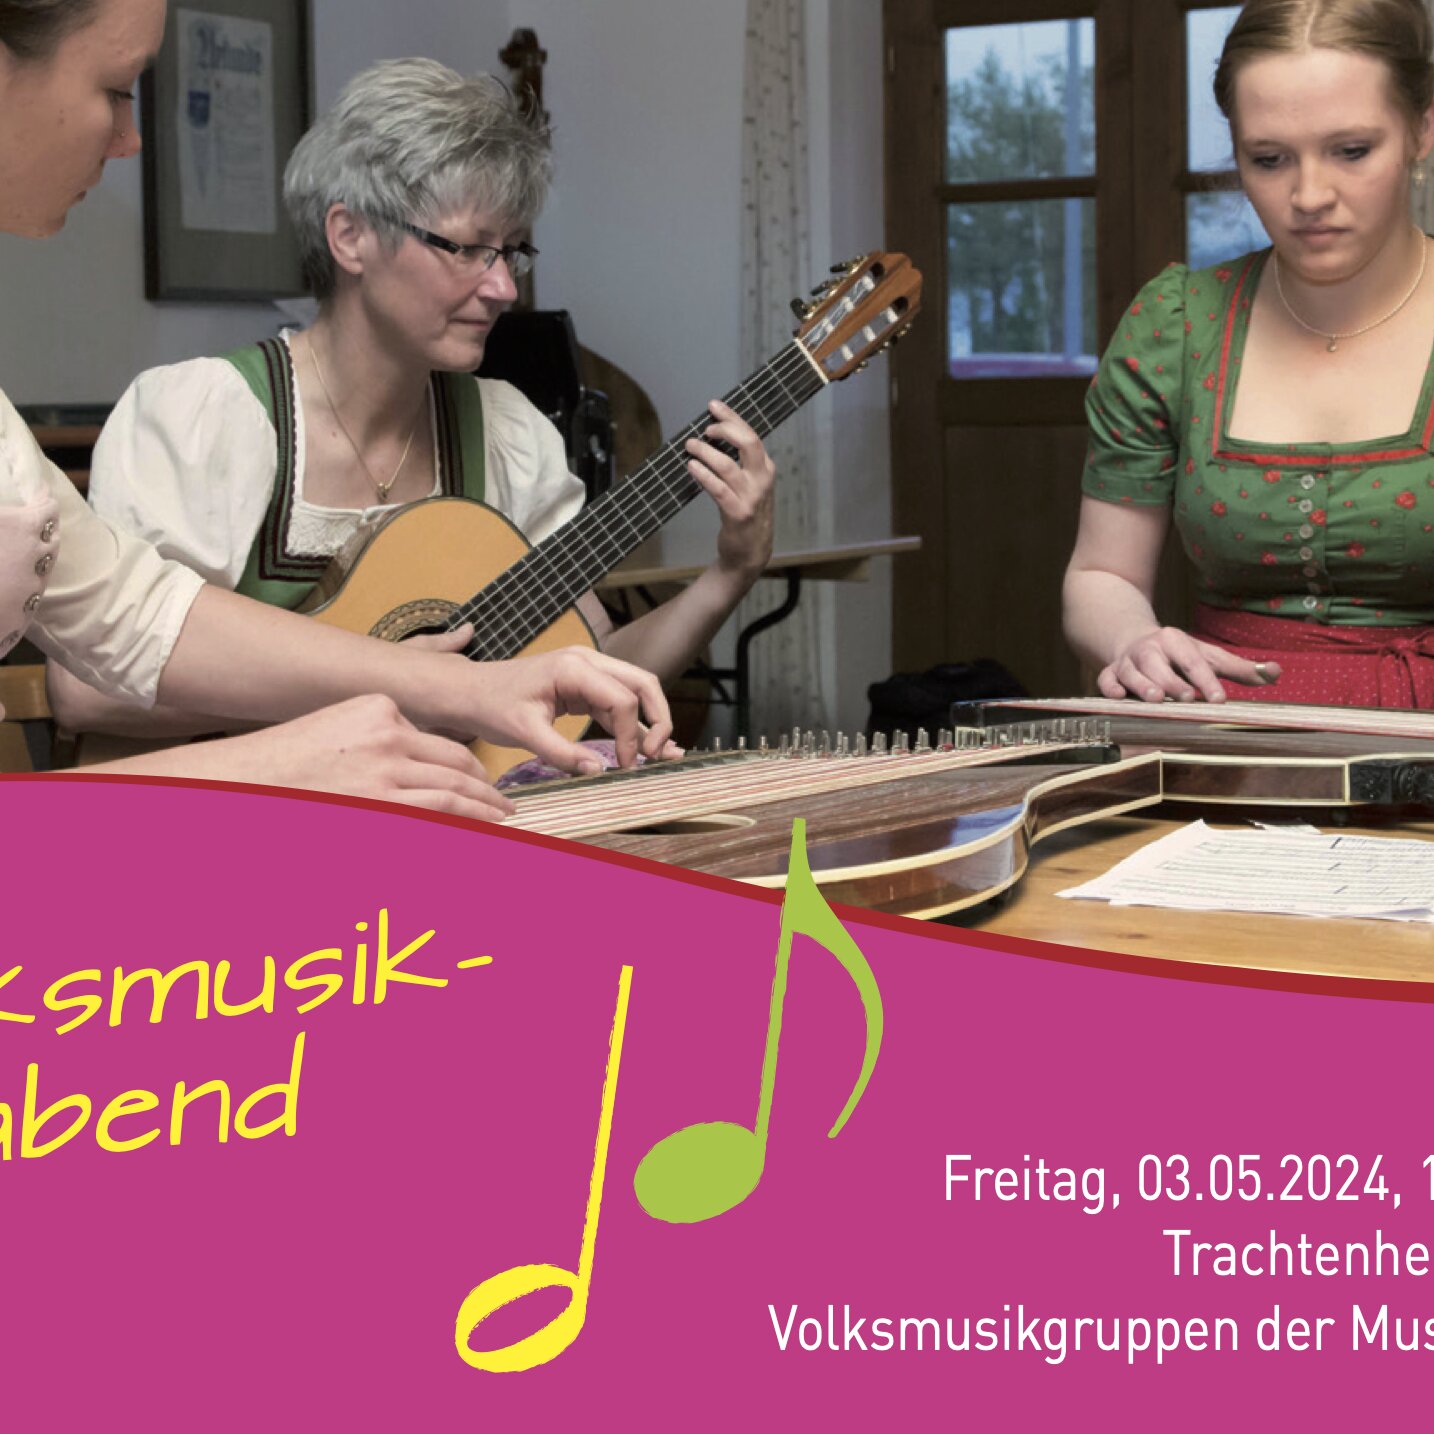 Volksmusikabend der Musikschule Prien e.V.